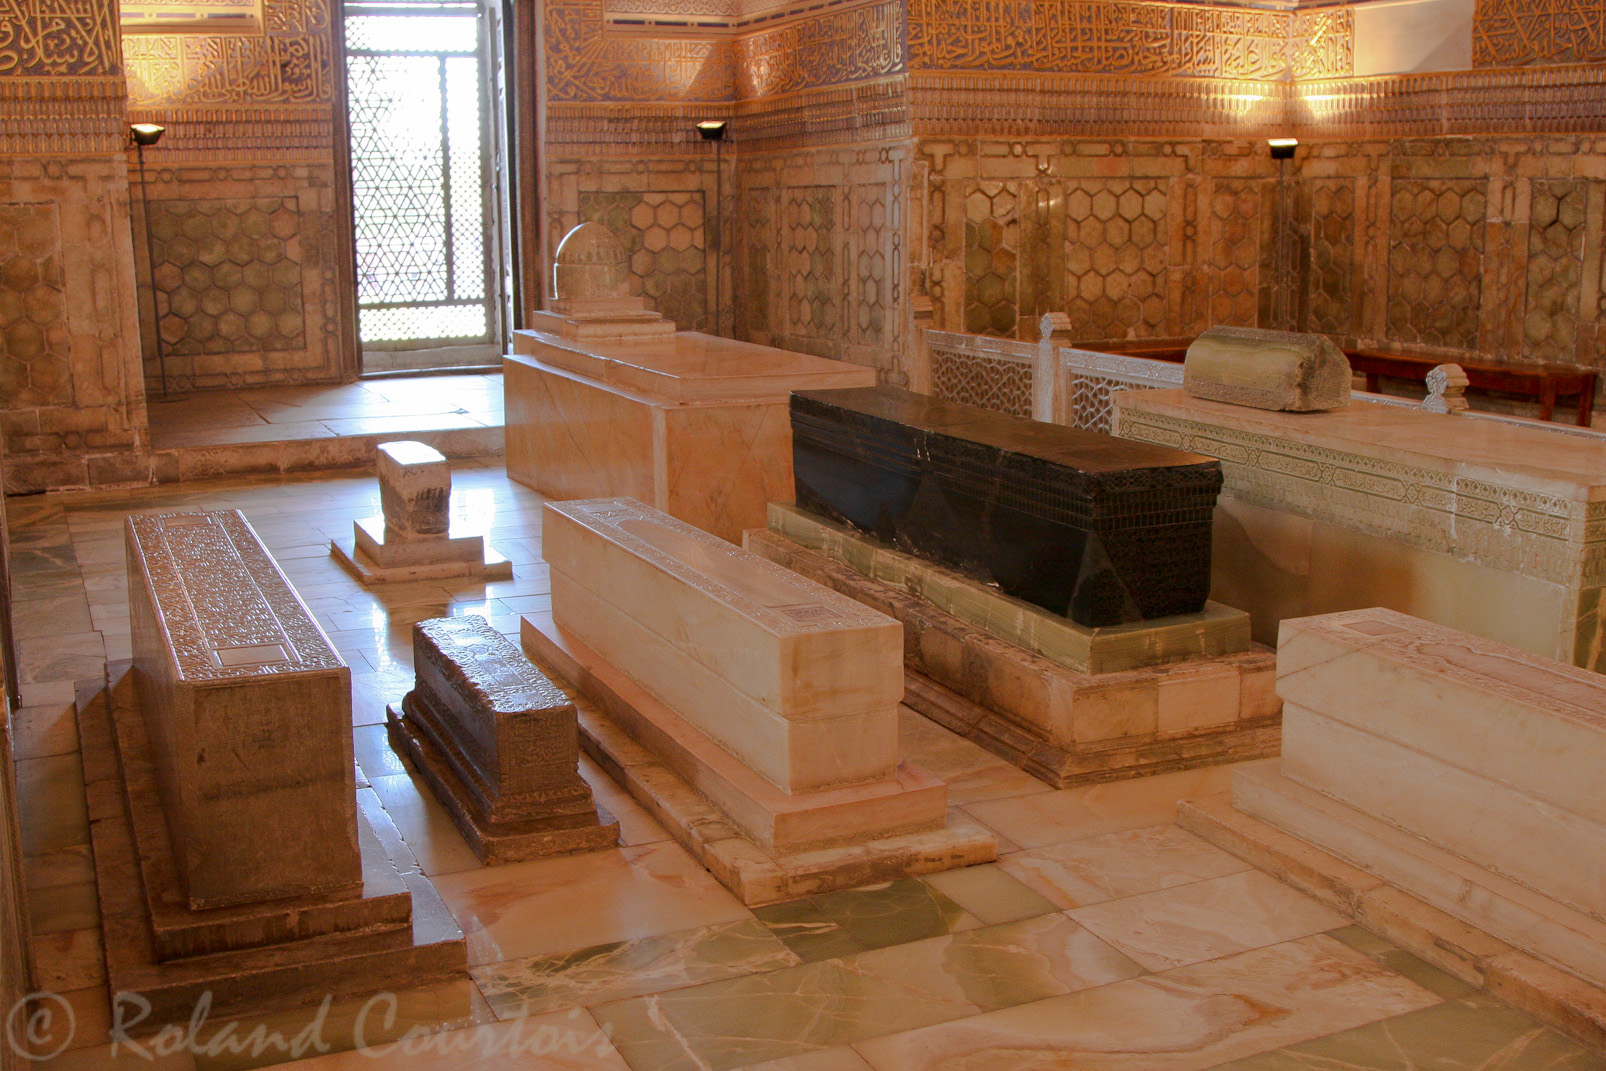 Le Gour Emir, mausolée de Tamerlan et de sa famille. Entourée de dalles funéraires en marbre, une plaque de jade de 1,8 mètre , la plus grande du monde, couvre la tombe de Tamerlan.